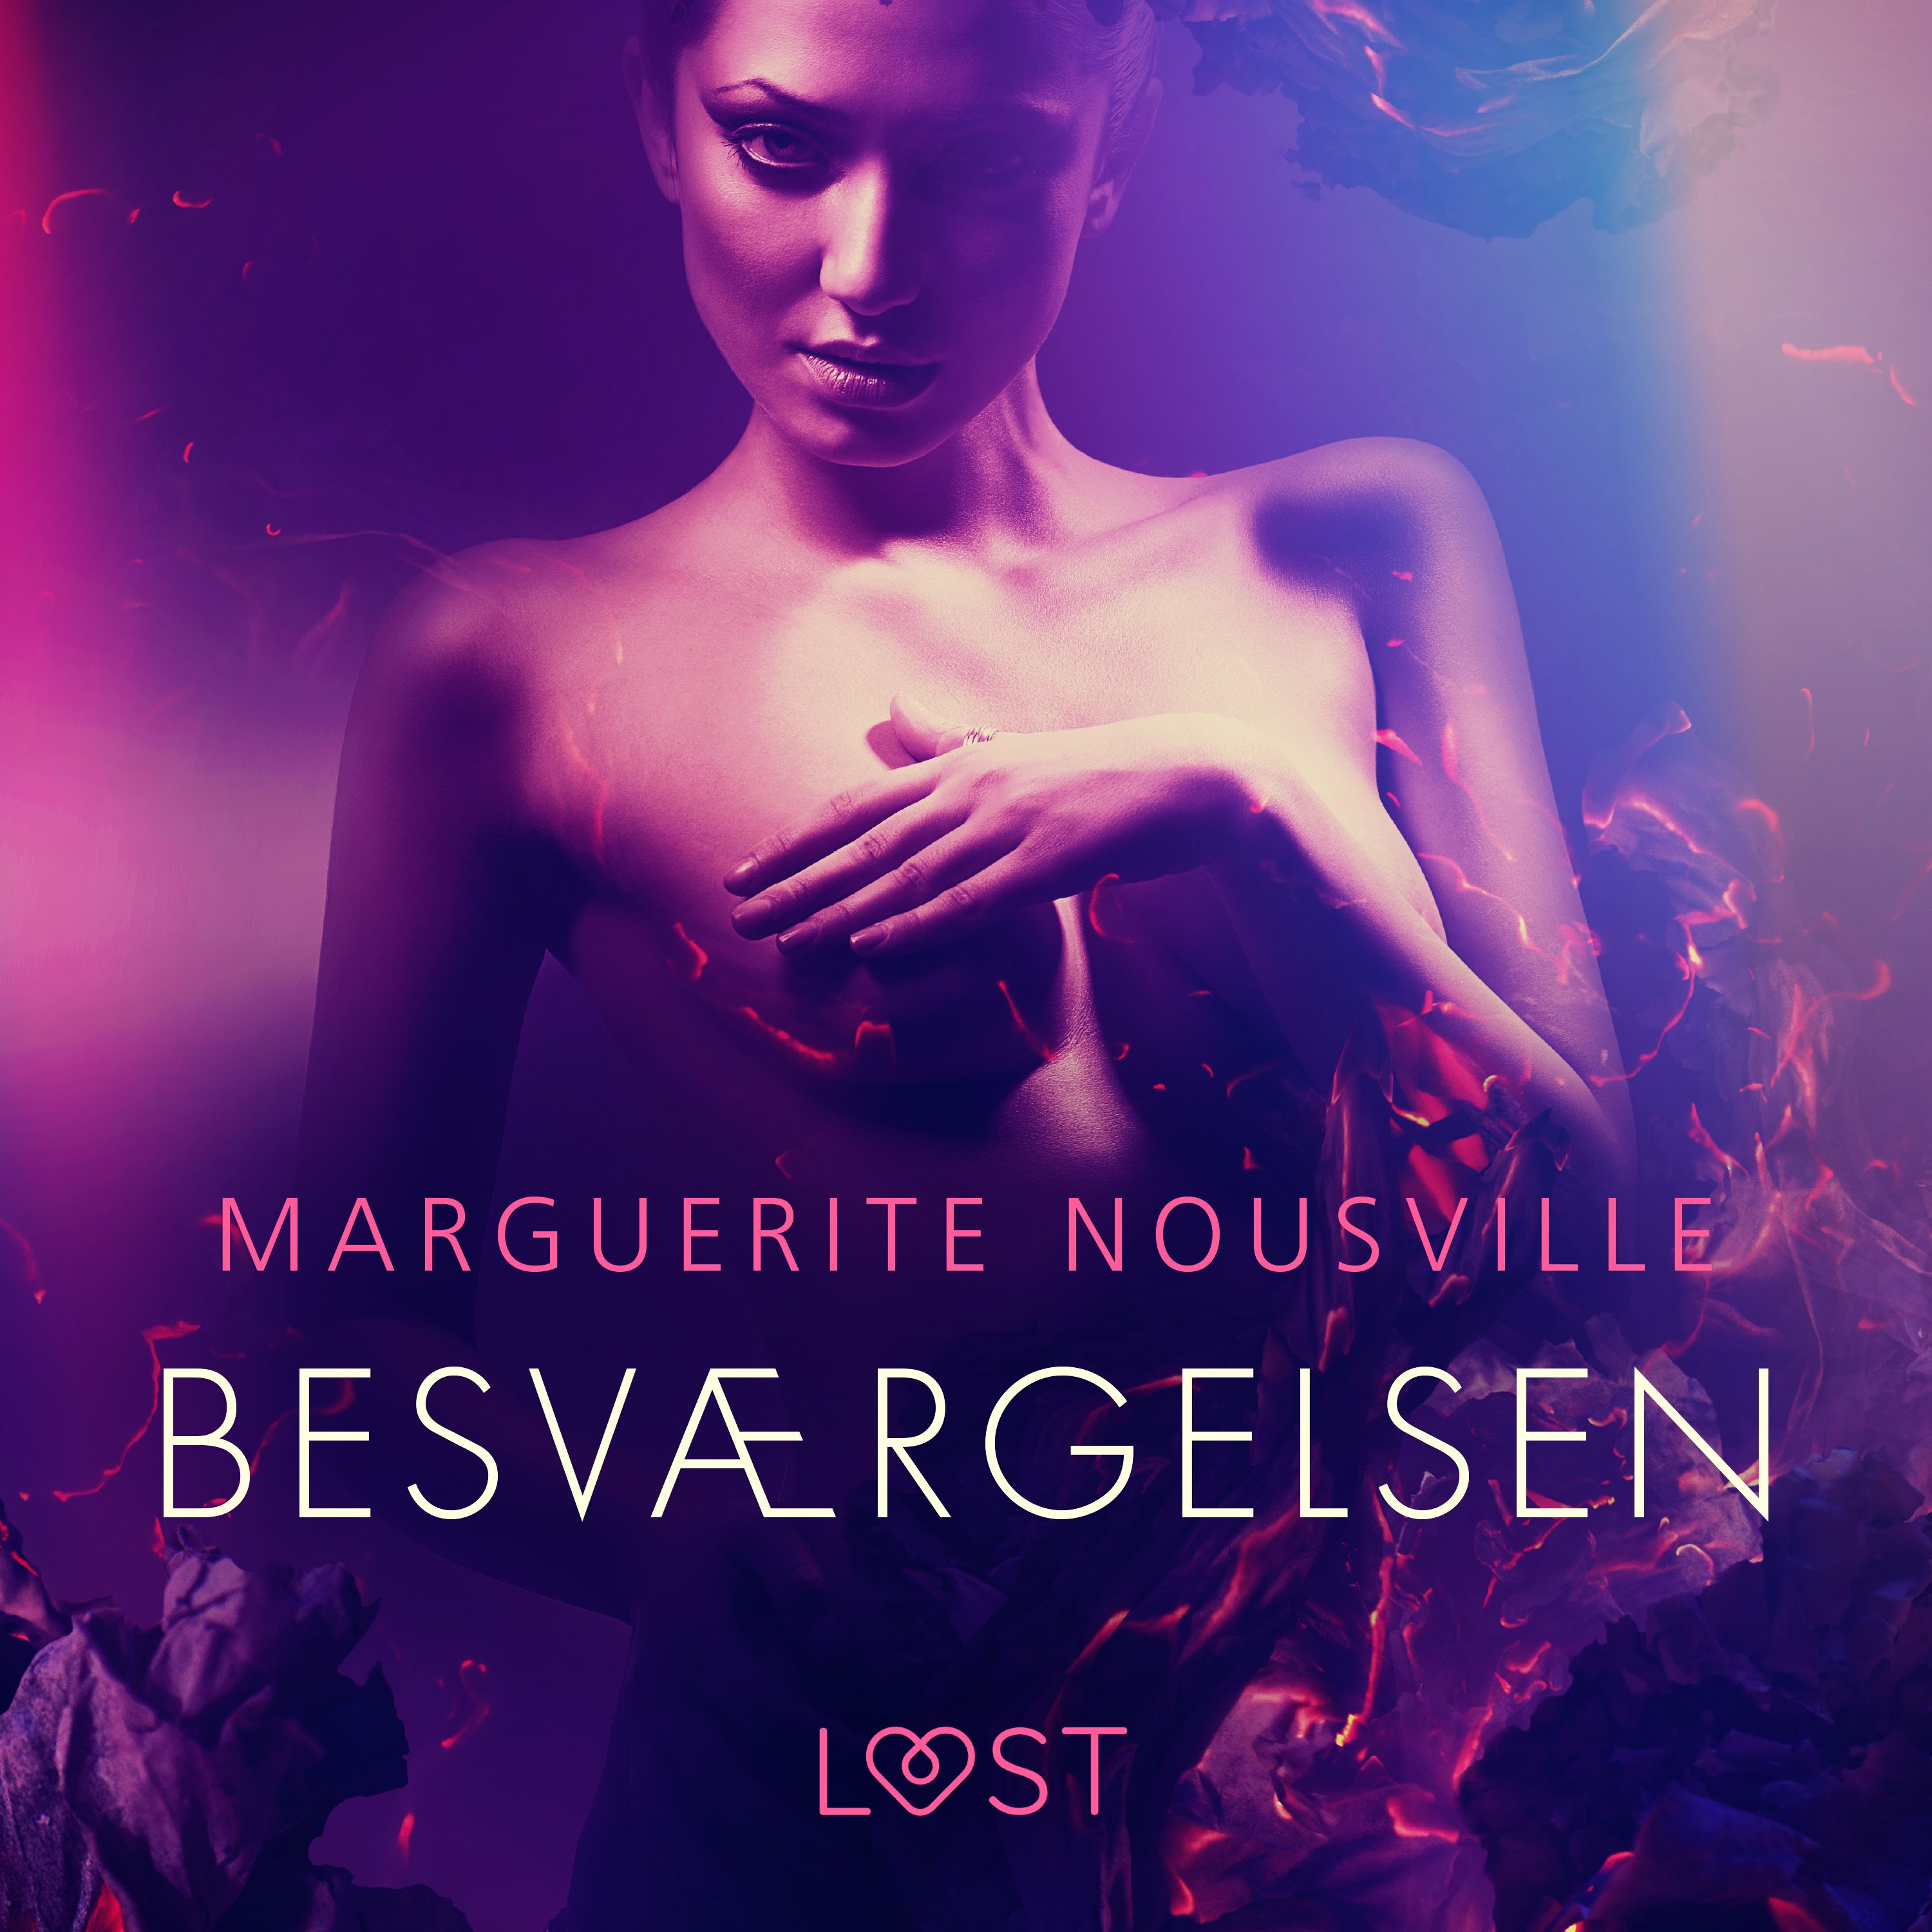 Besværgelsen, ljudbok av Marguerite Nousville